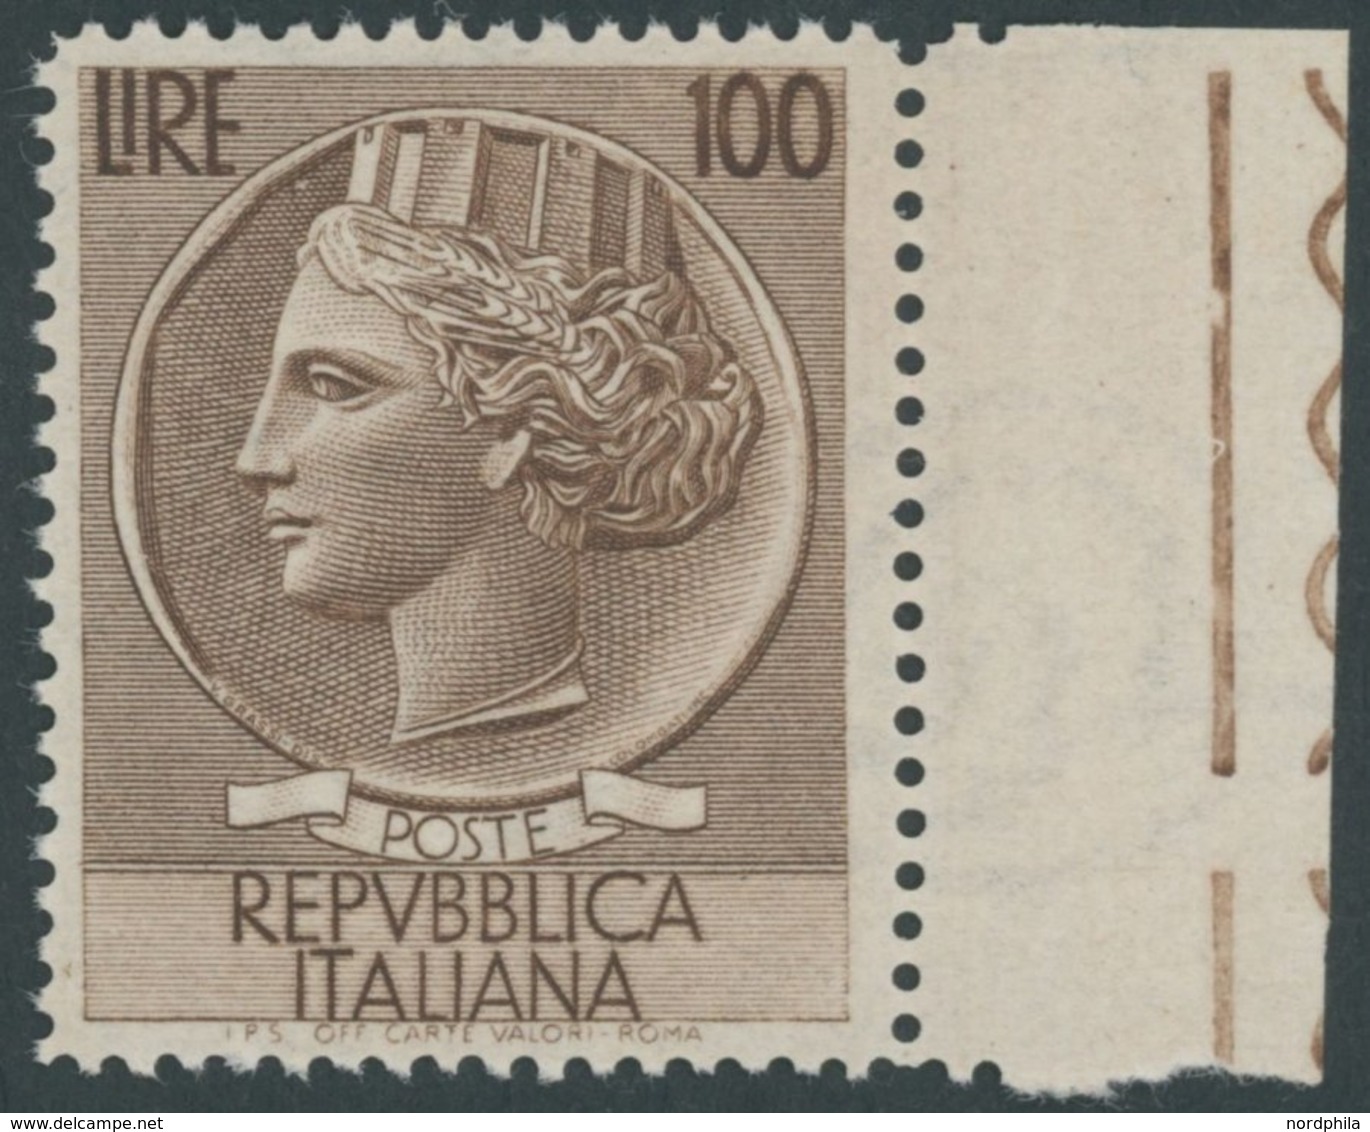 ITALIEN 920A **, 1954, 100 L. Braun, Wz. 3, Gezähnt L 131/4, Postfrisch, Pracht, Mi. 200.- - Non Classificati